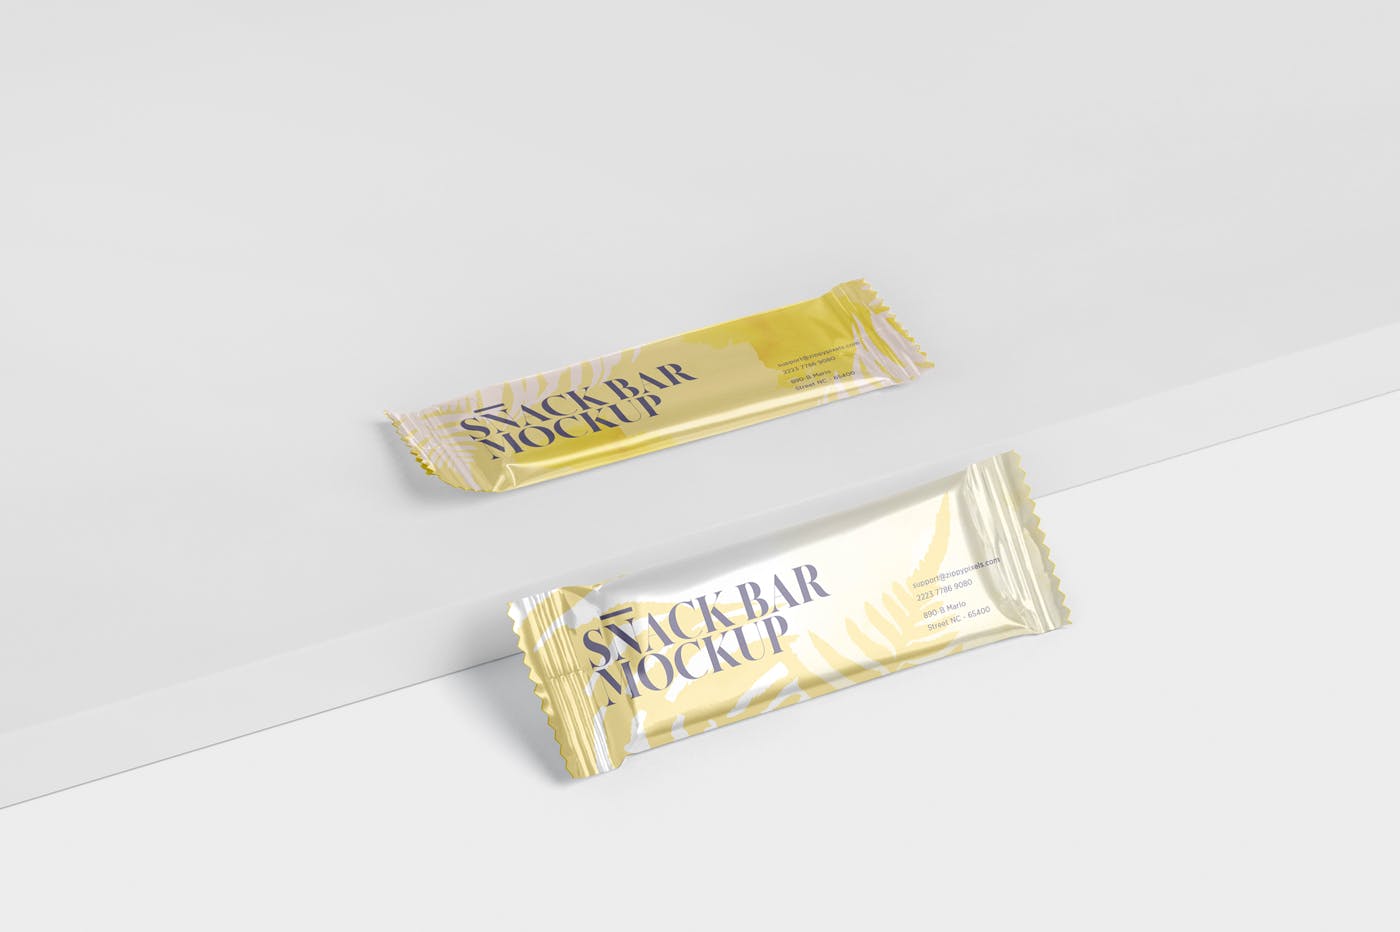 零食糖果包装袋设计效果图蚂蚁素材精选 Snack Bar Mockup – Slim Rectangular插图(5)